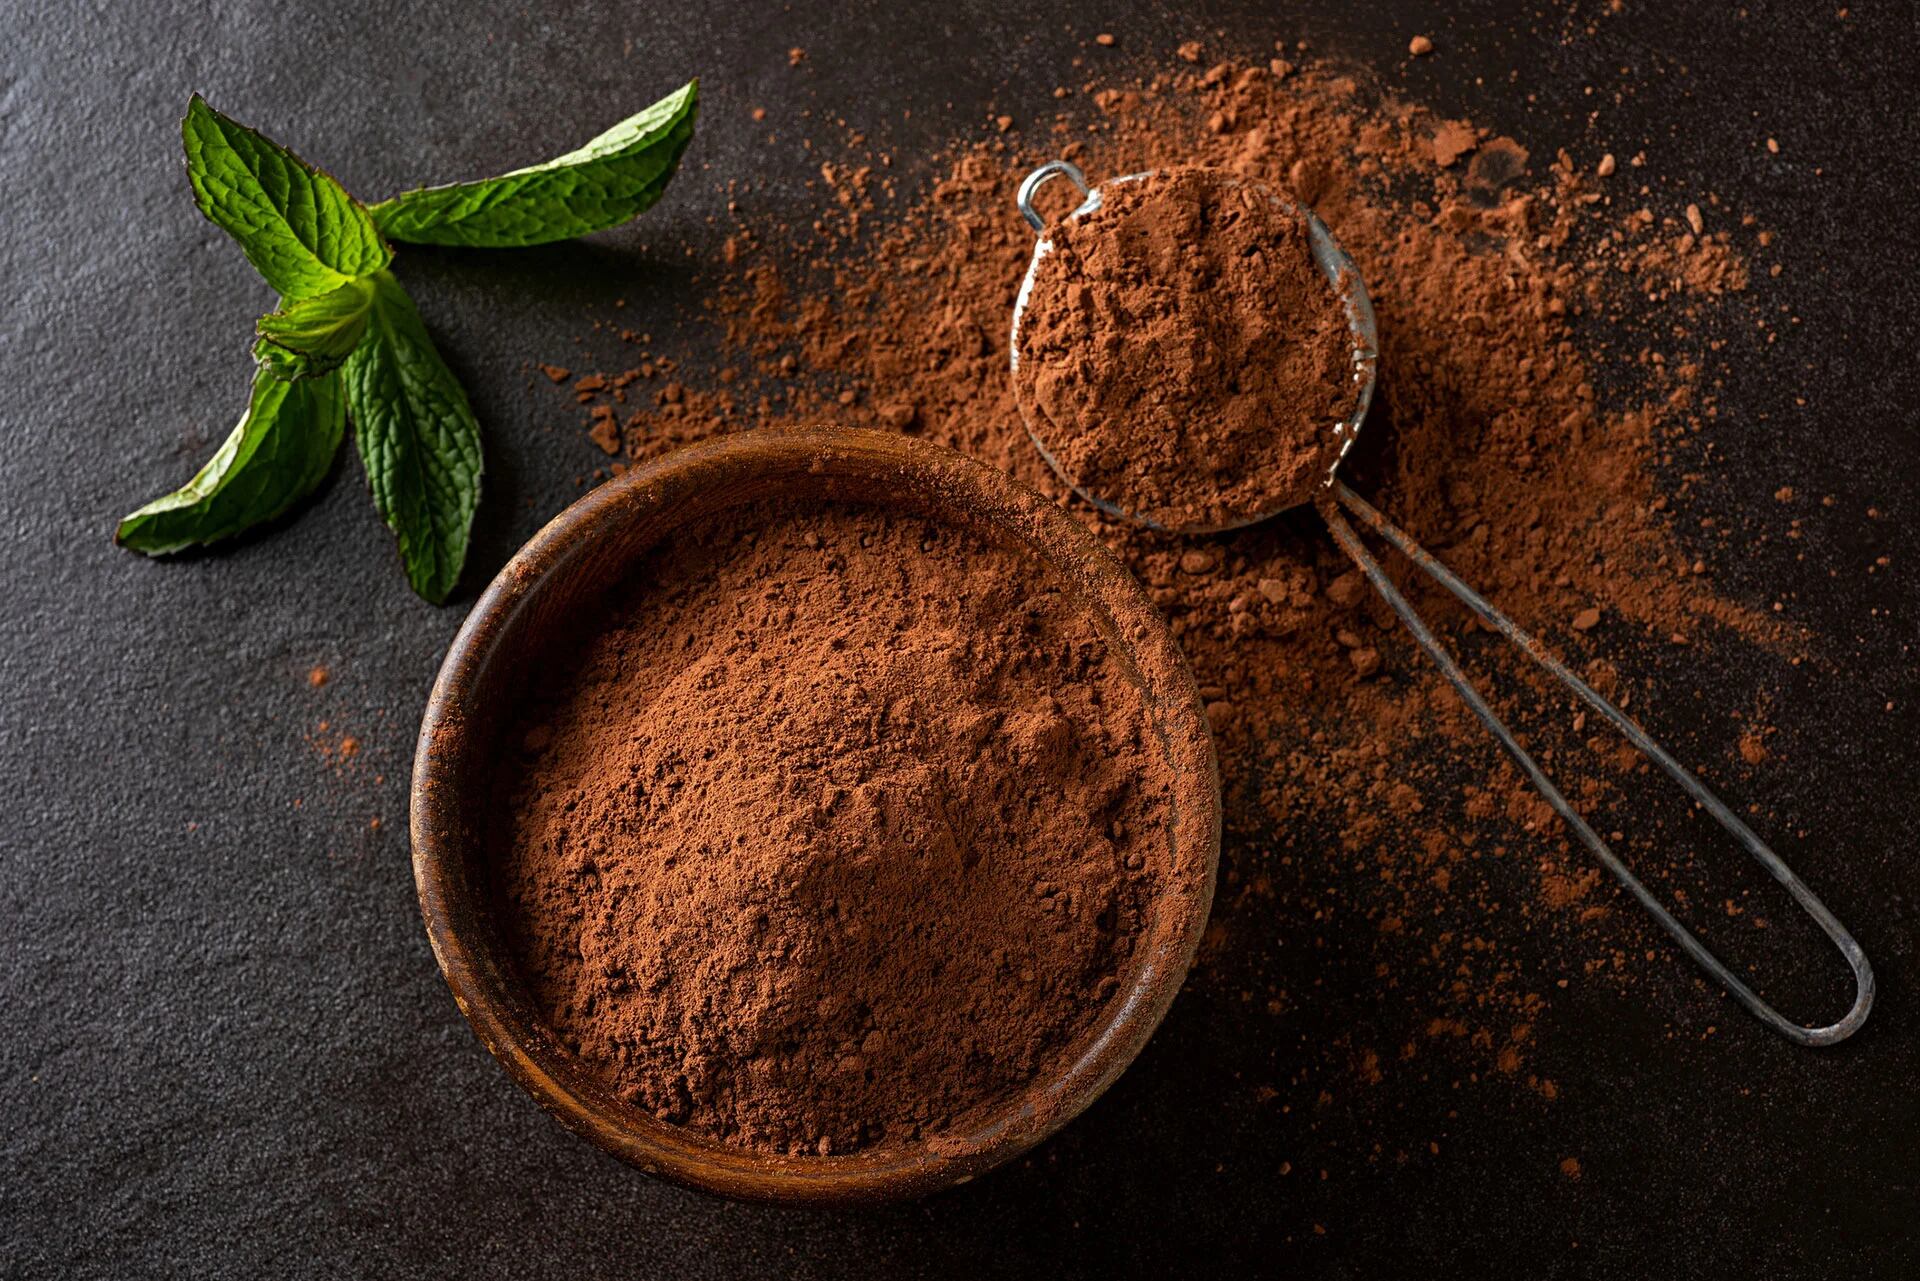 El cacao tiene múltiples beneficios para la salud si es consumido en forma moderada (Getty)